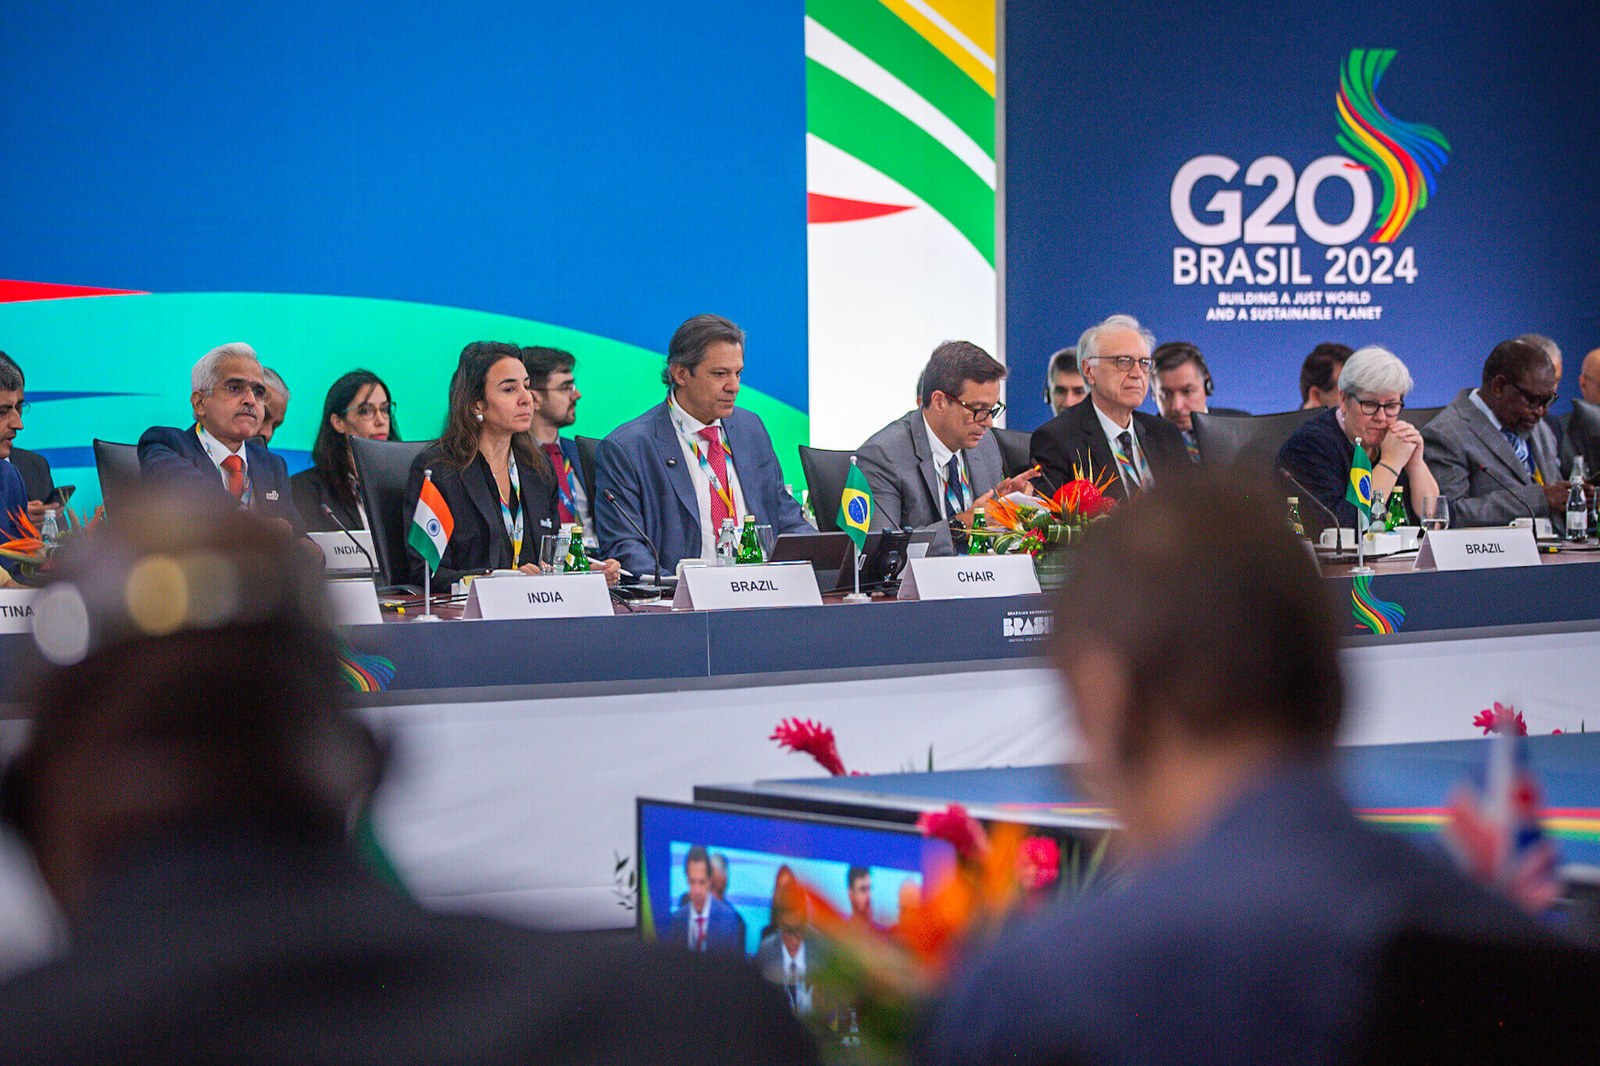 En una reunión ministerial del Canal de Finanzas del G20 celebrada en Washington, el ministro de Hacienda, Fernando Haddad, presentó las principales ideas del Plan del G20 para la reforma de los bancos multilaterales. Crédito: Diogo Zacarias/MF